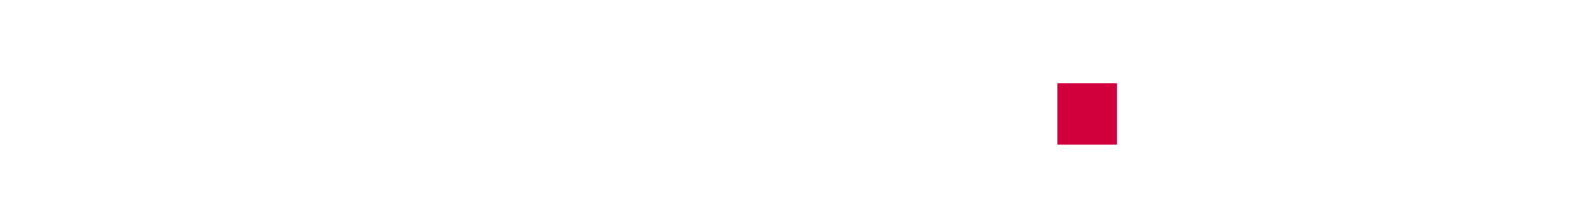 Shurgard Self Storage Logo groß für dunkle Hintergründe (transparentes PNG)